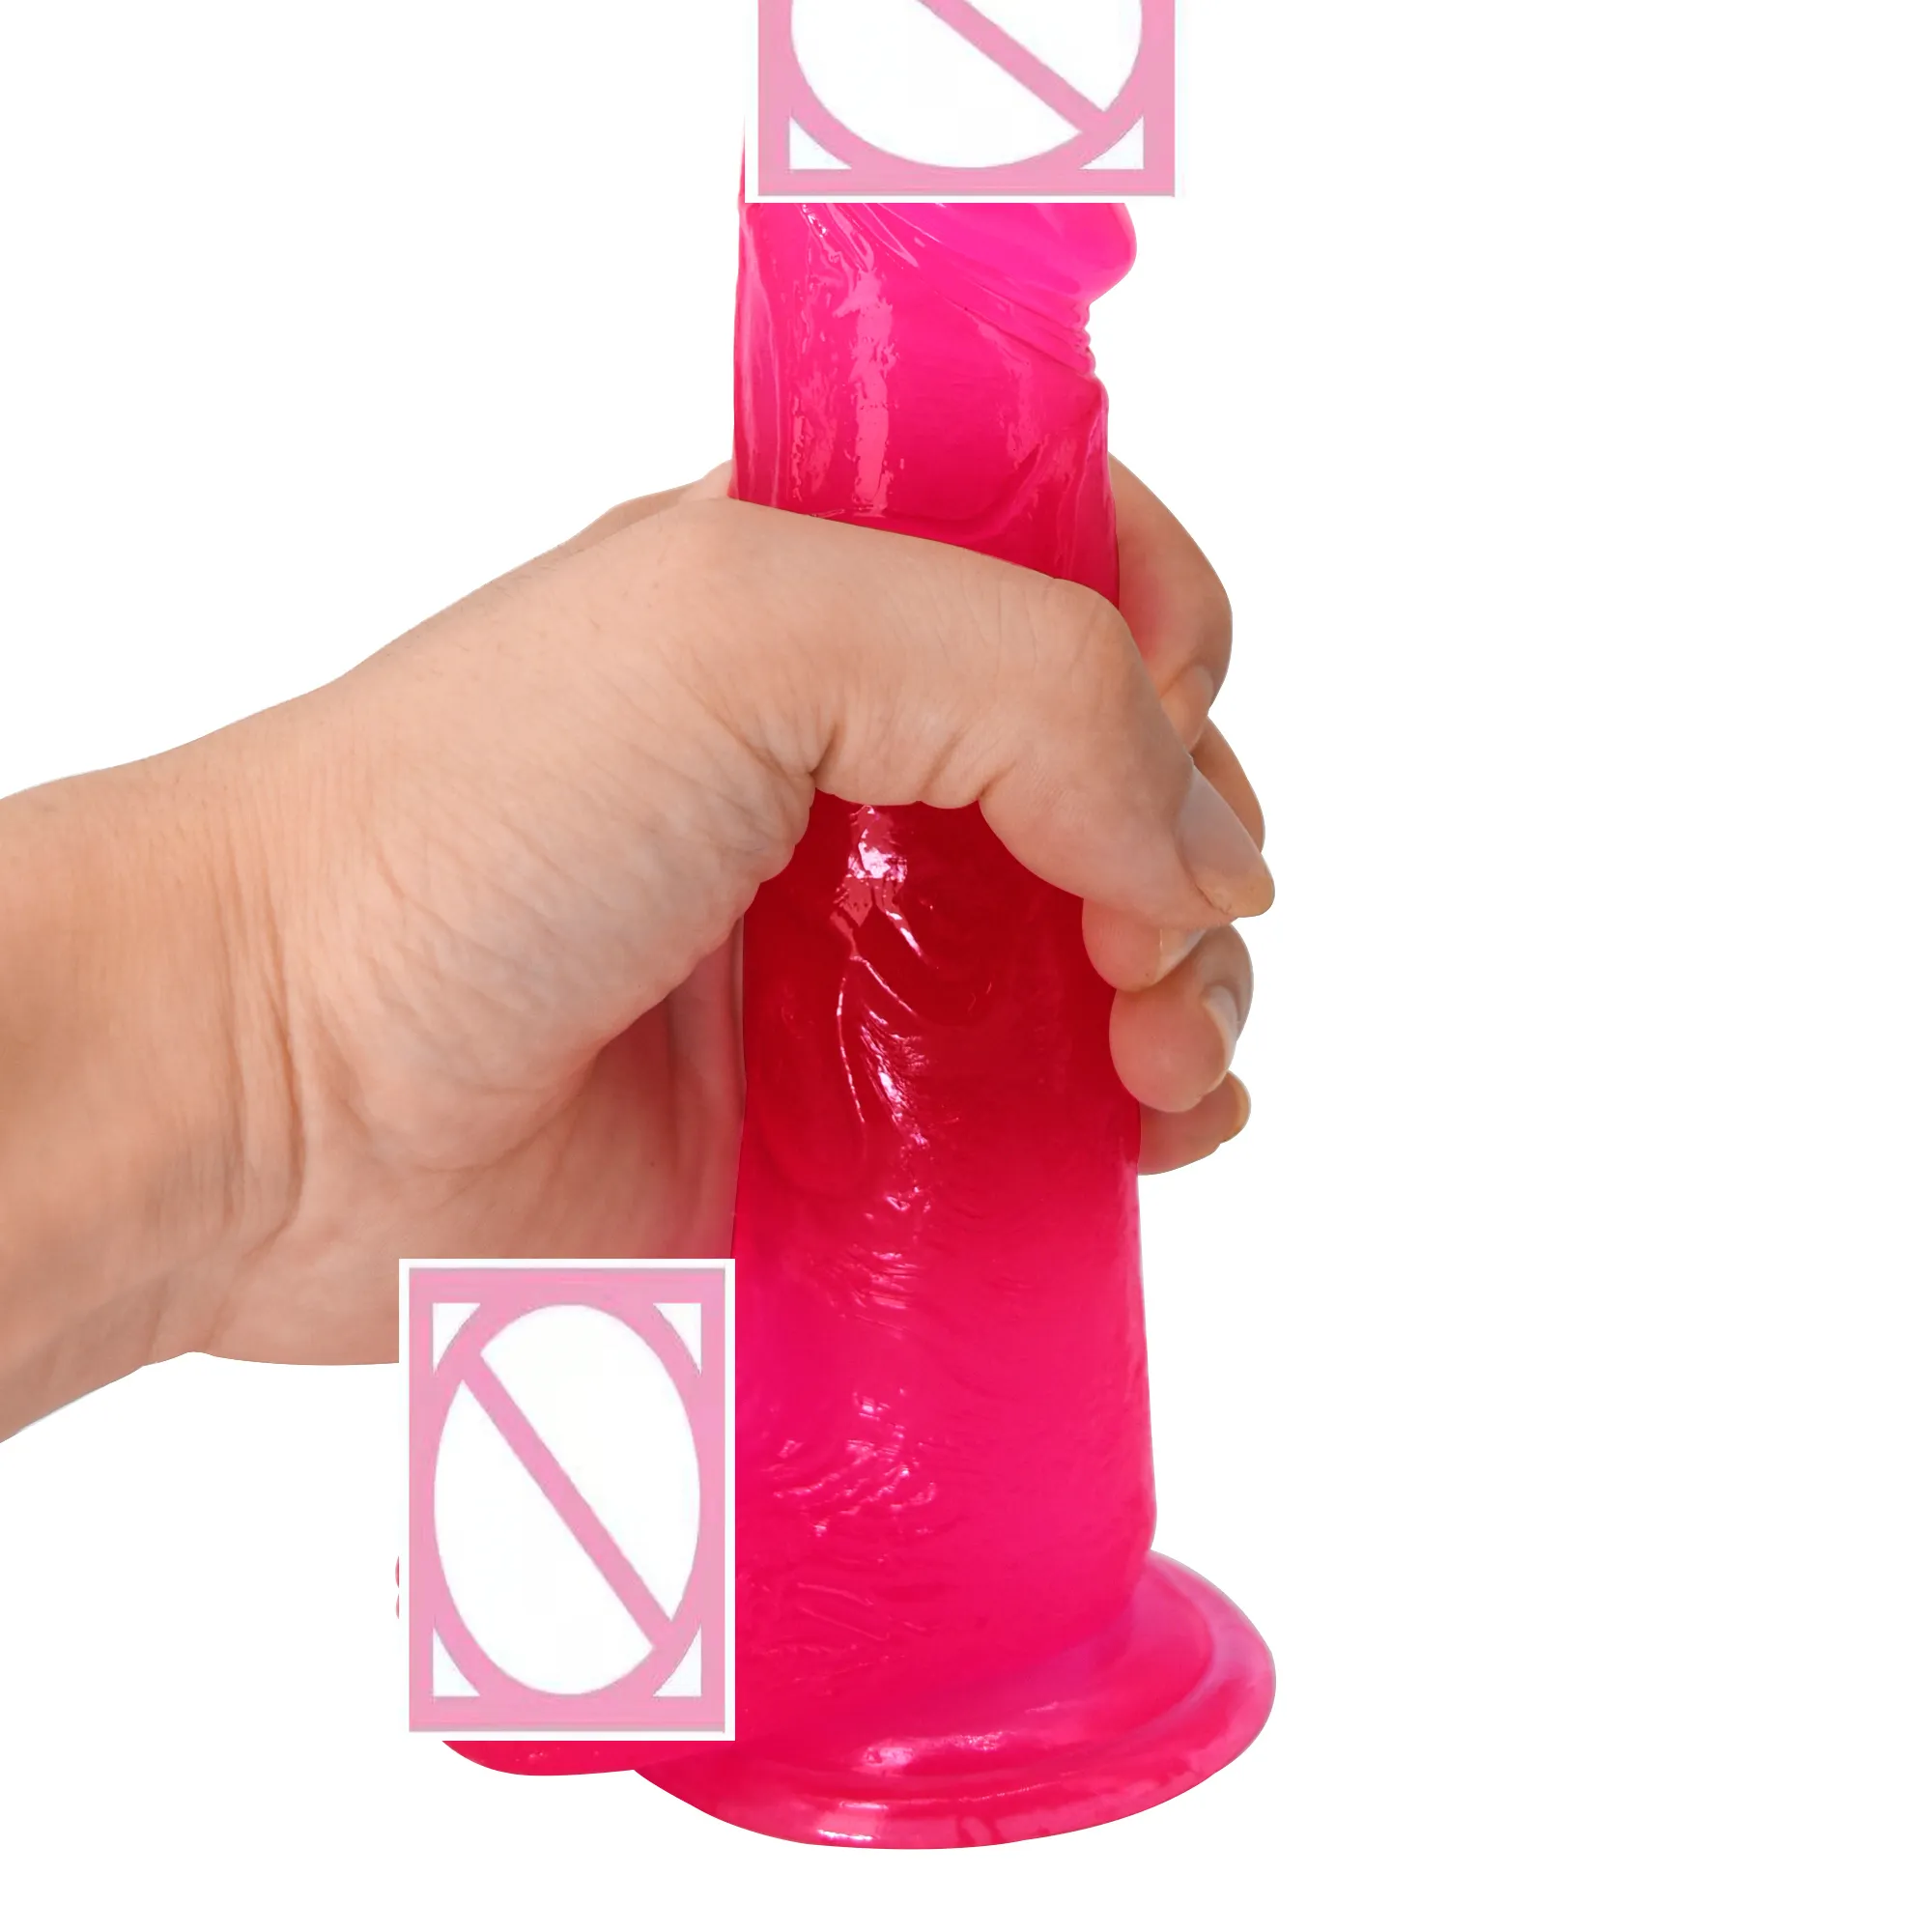 Xxx quente oem xxxxxxxx vídeo para vagina máquina de sexo produtos sexuais realista claro cristal colorido vibrador sextoy juguetes sexuals